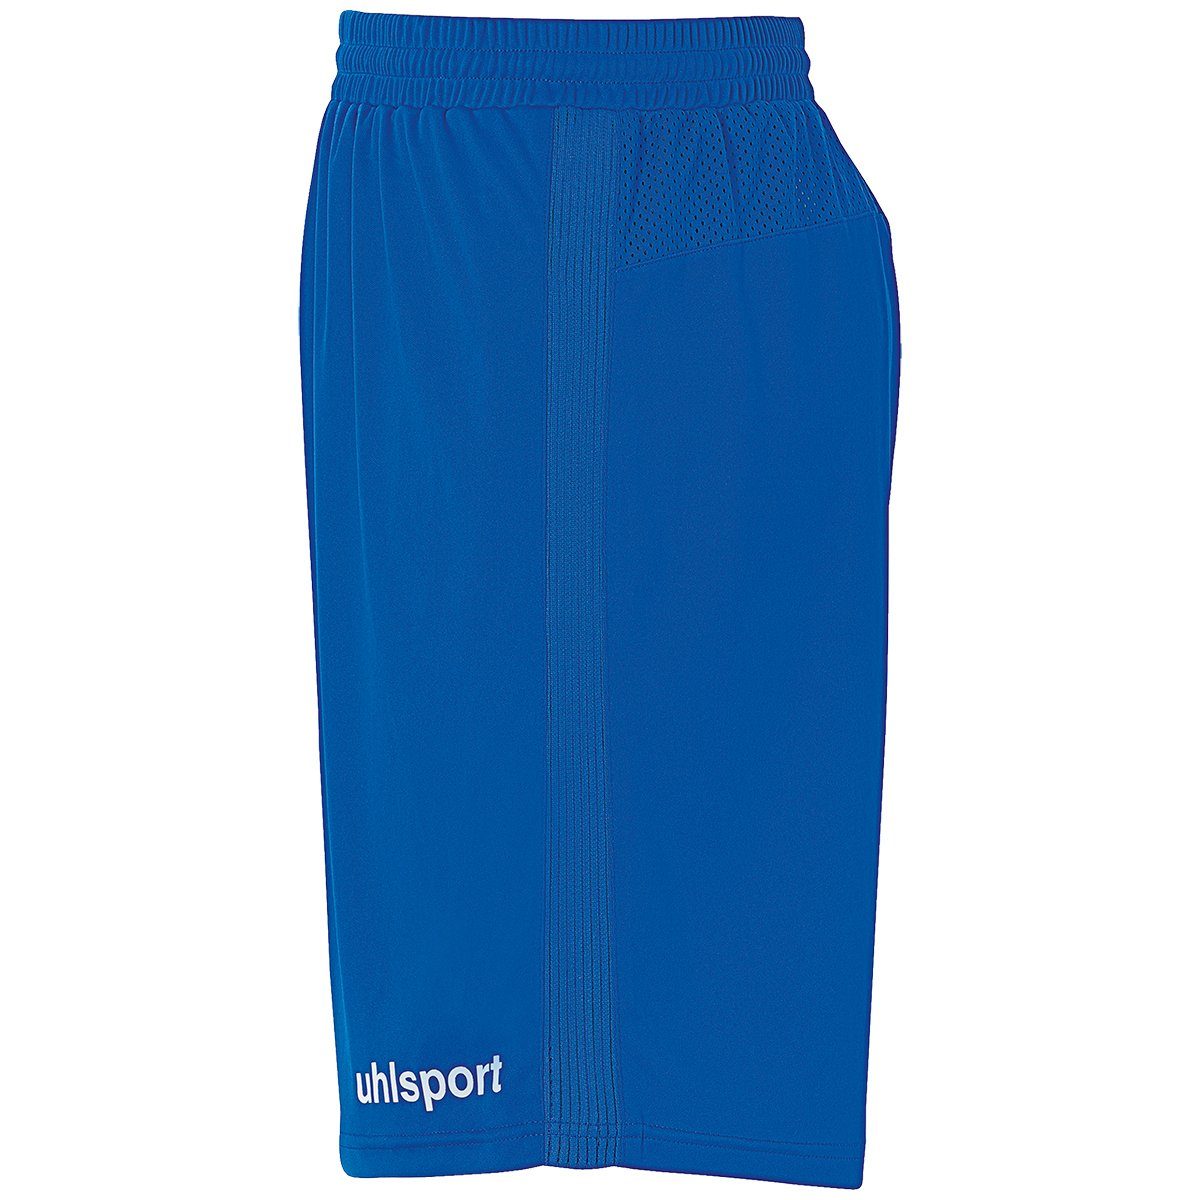 PERFORMANCE azurblau/weiß Shorts uhlsport SHORTS uhlsport Shorts